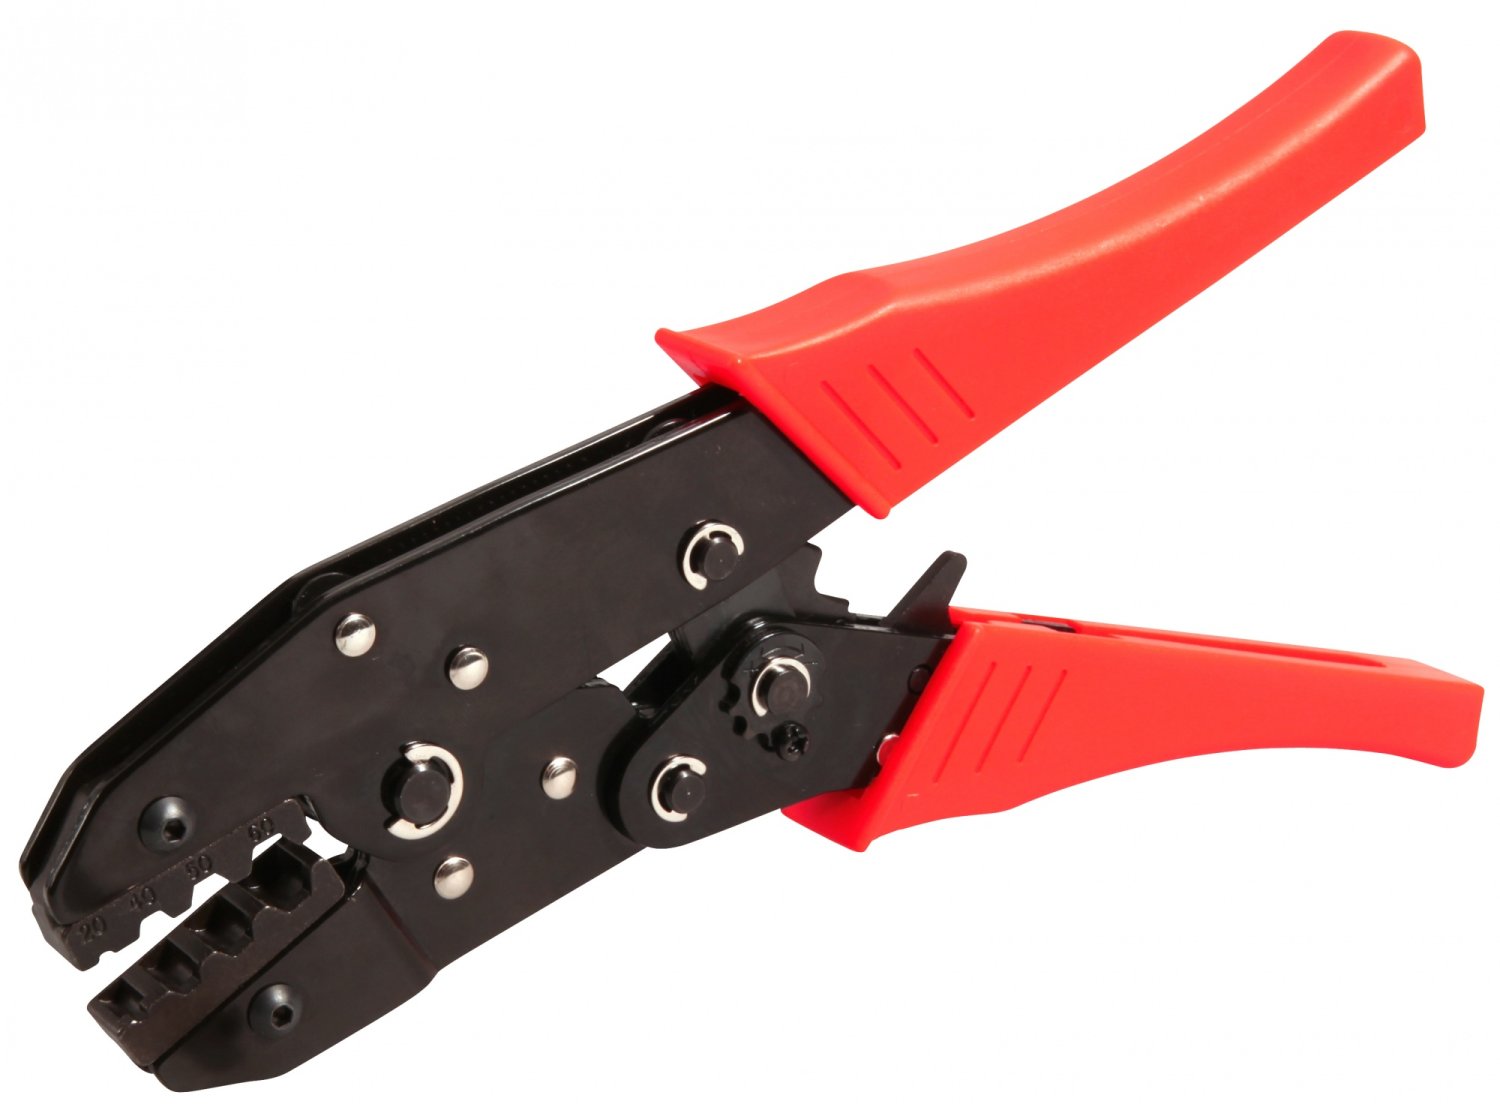 Велосипедный многофункциональный инструмент ELVEDES для обжимания и троса и рубашки, красный/черный,